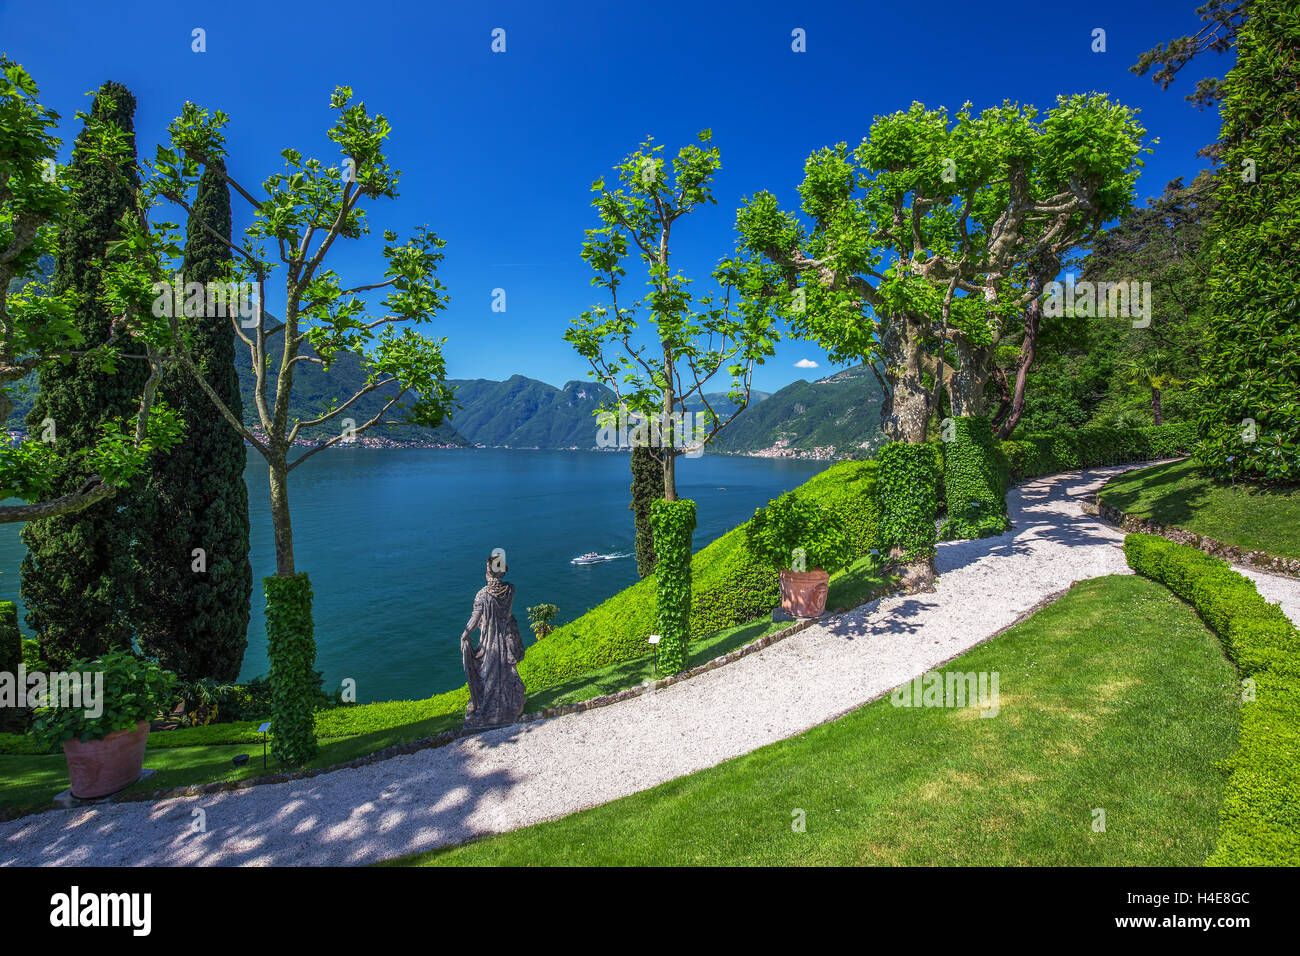 VILLA BALBIANELLO, ITALIE - 17 mai 2015 - belle vue sur le lac de Côme et les Alpes de la Villa Balbianello, Italie. Villa a été utilisé pour Banque D'Images